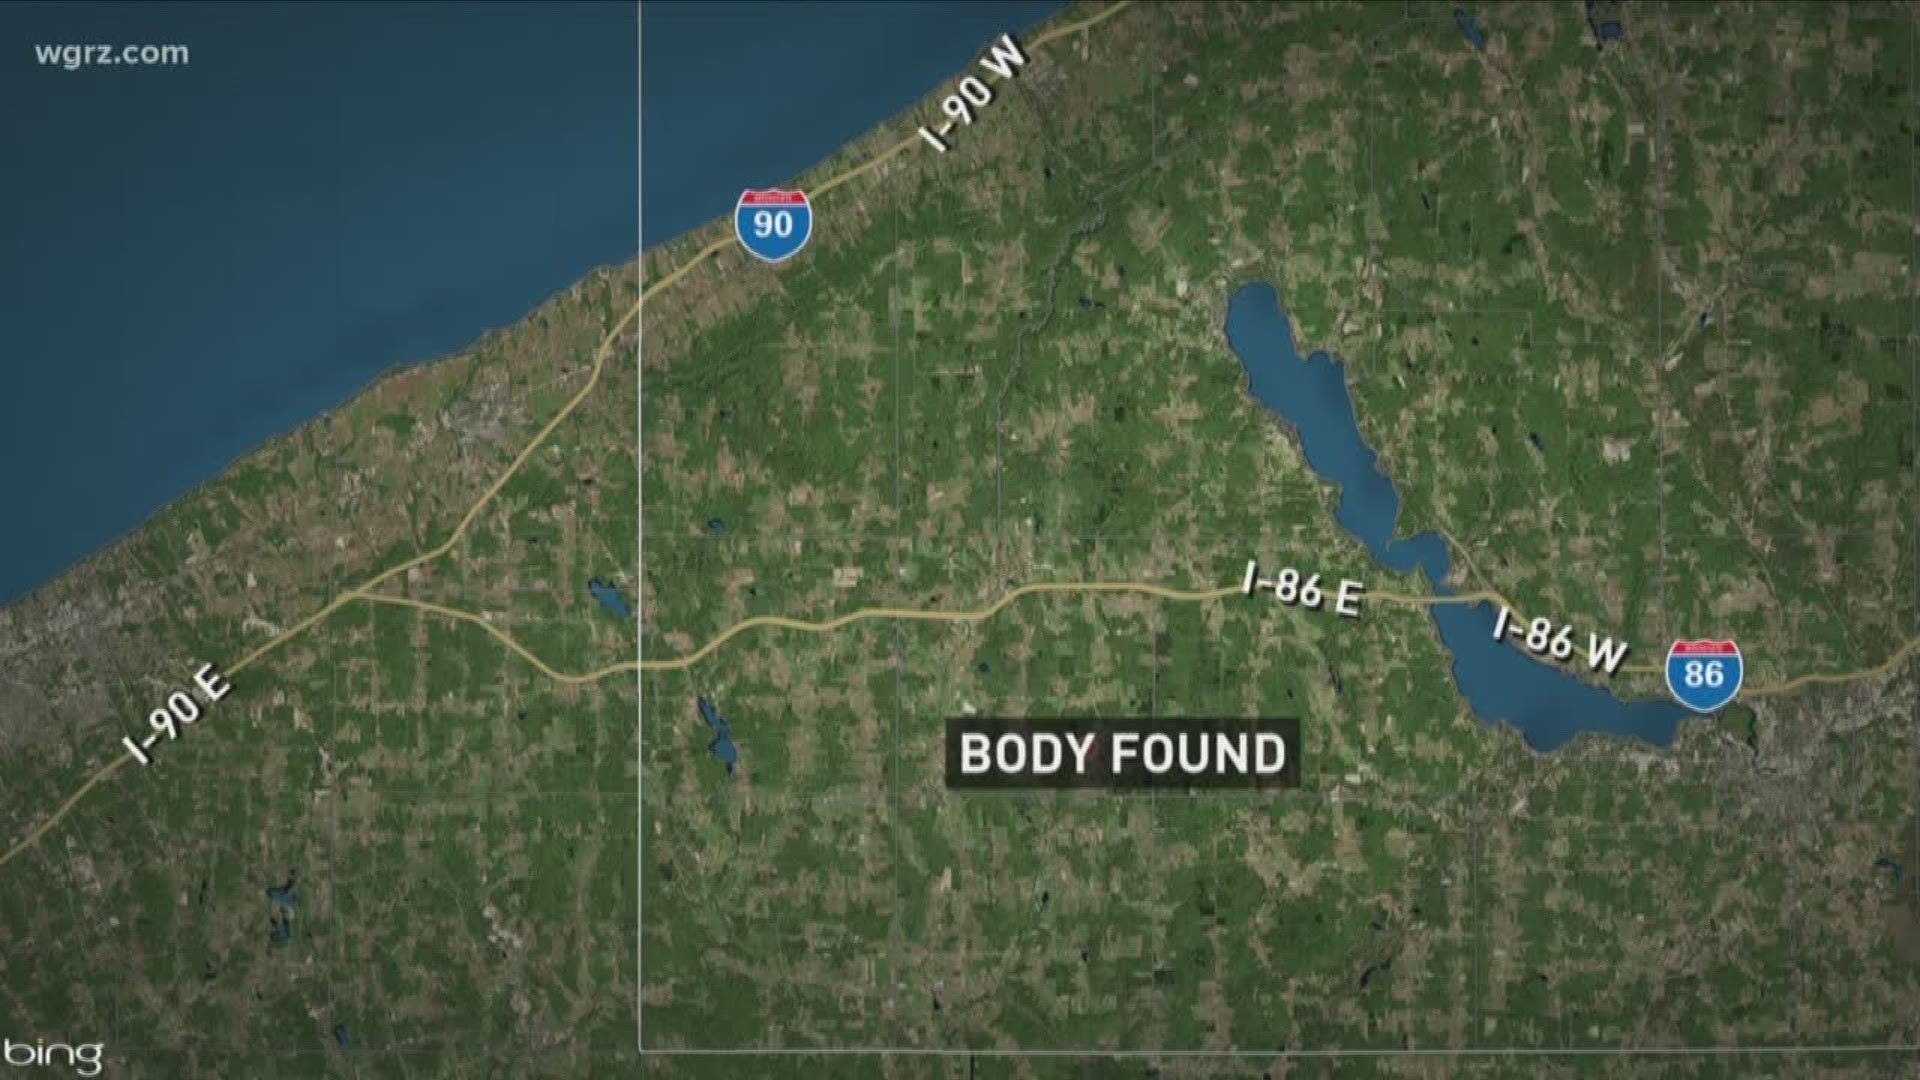 State police find body in Sherman